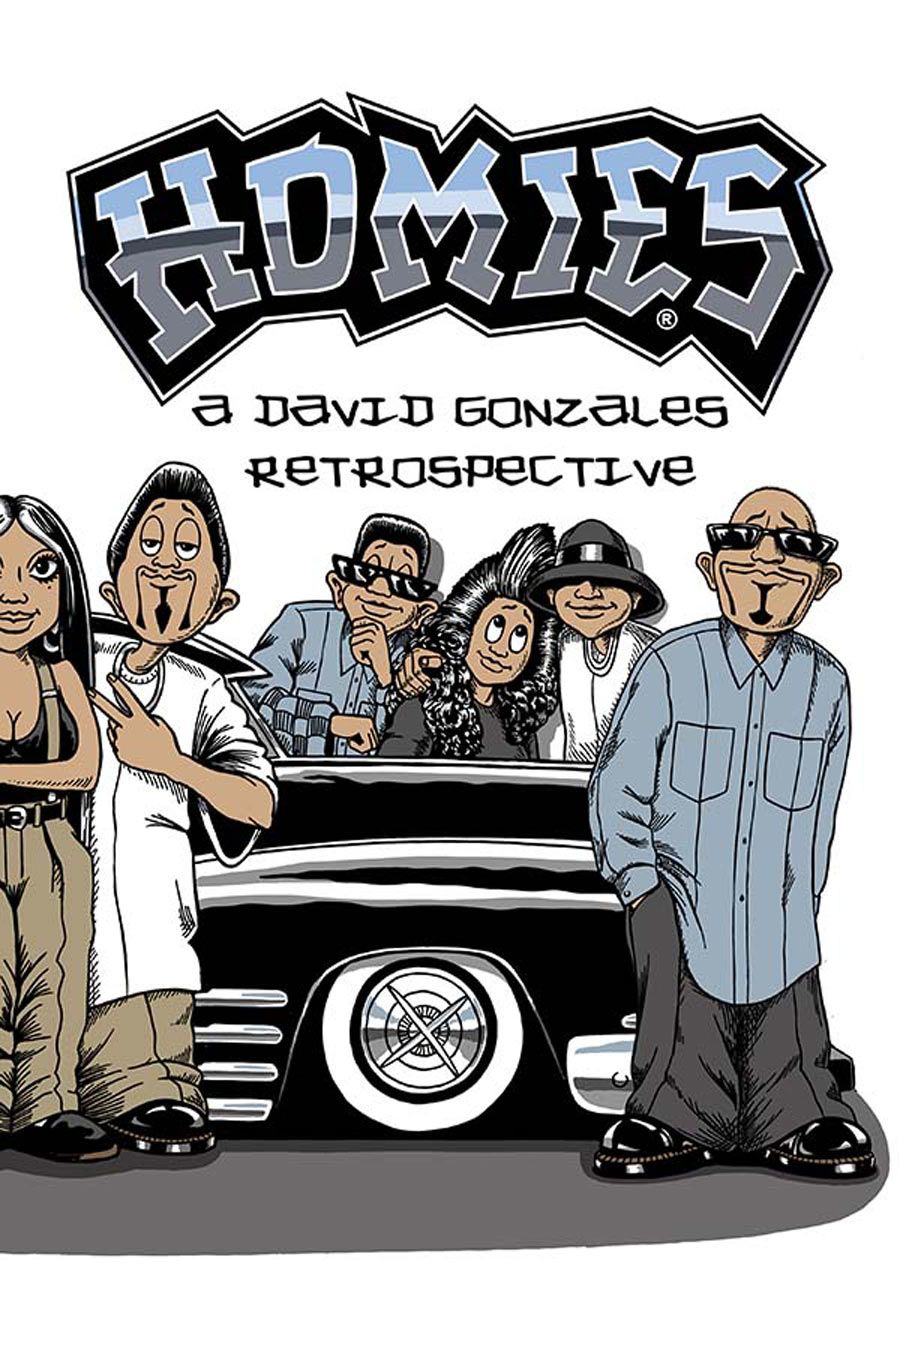 homies-original-book-cover-final